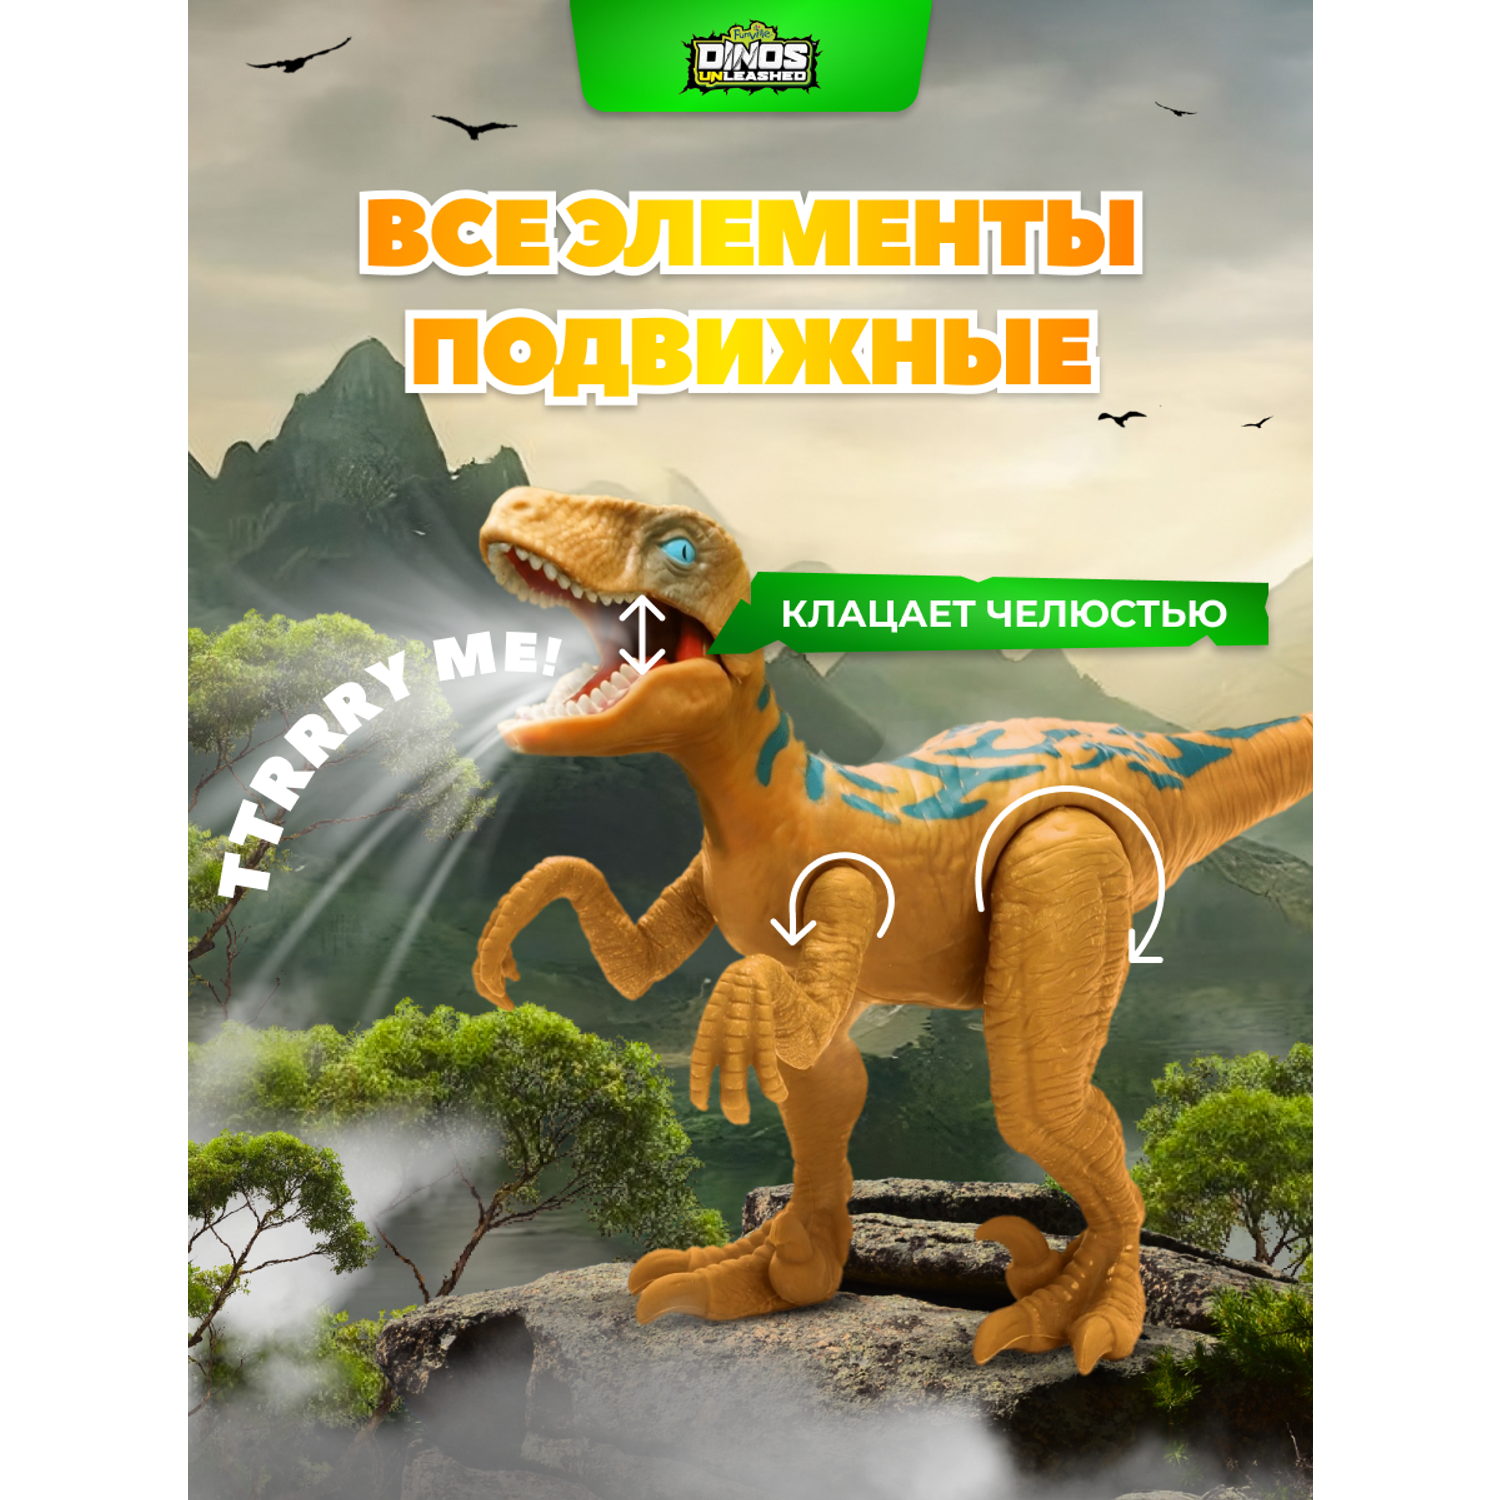 Фигурка динозавра Dinos Unleashed Раптор со звуковыми эффектами - фото 6